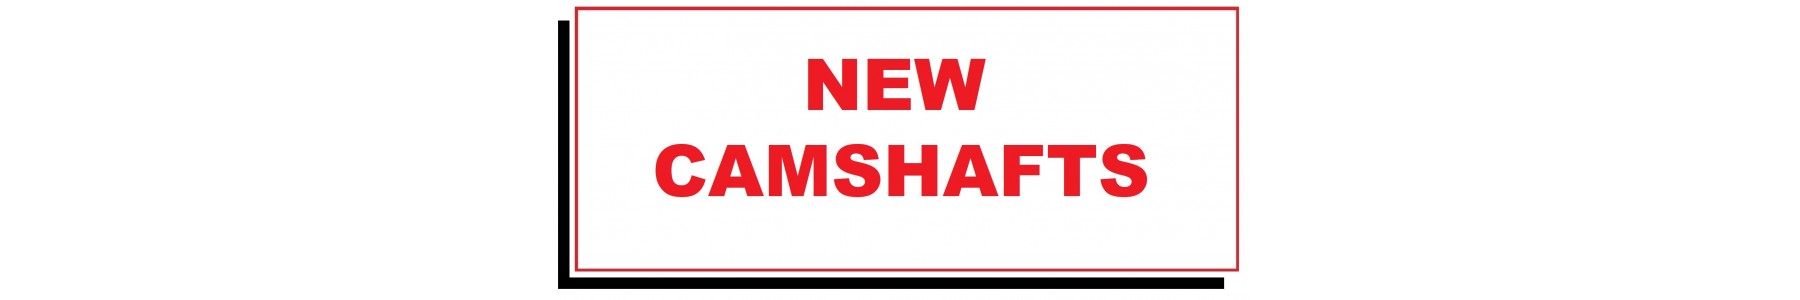 NEW CAMSHAFTS